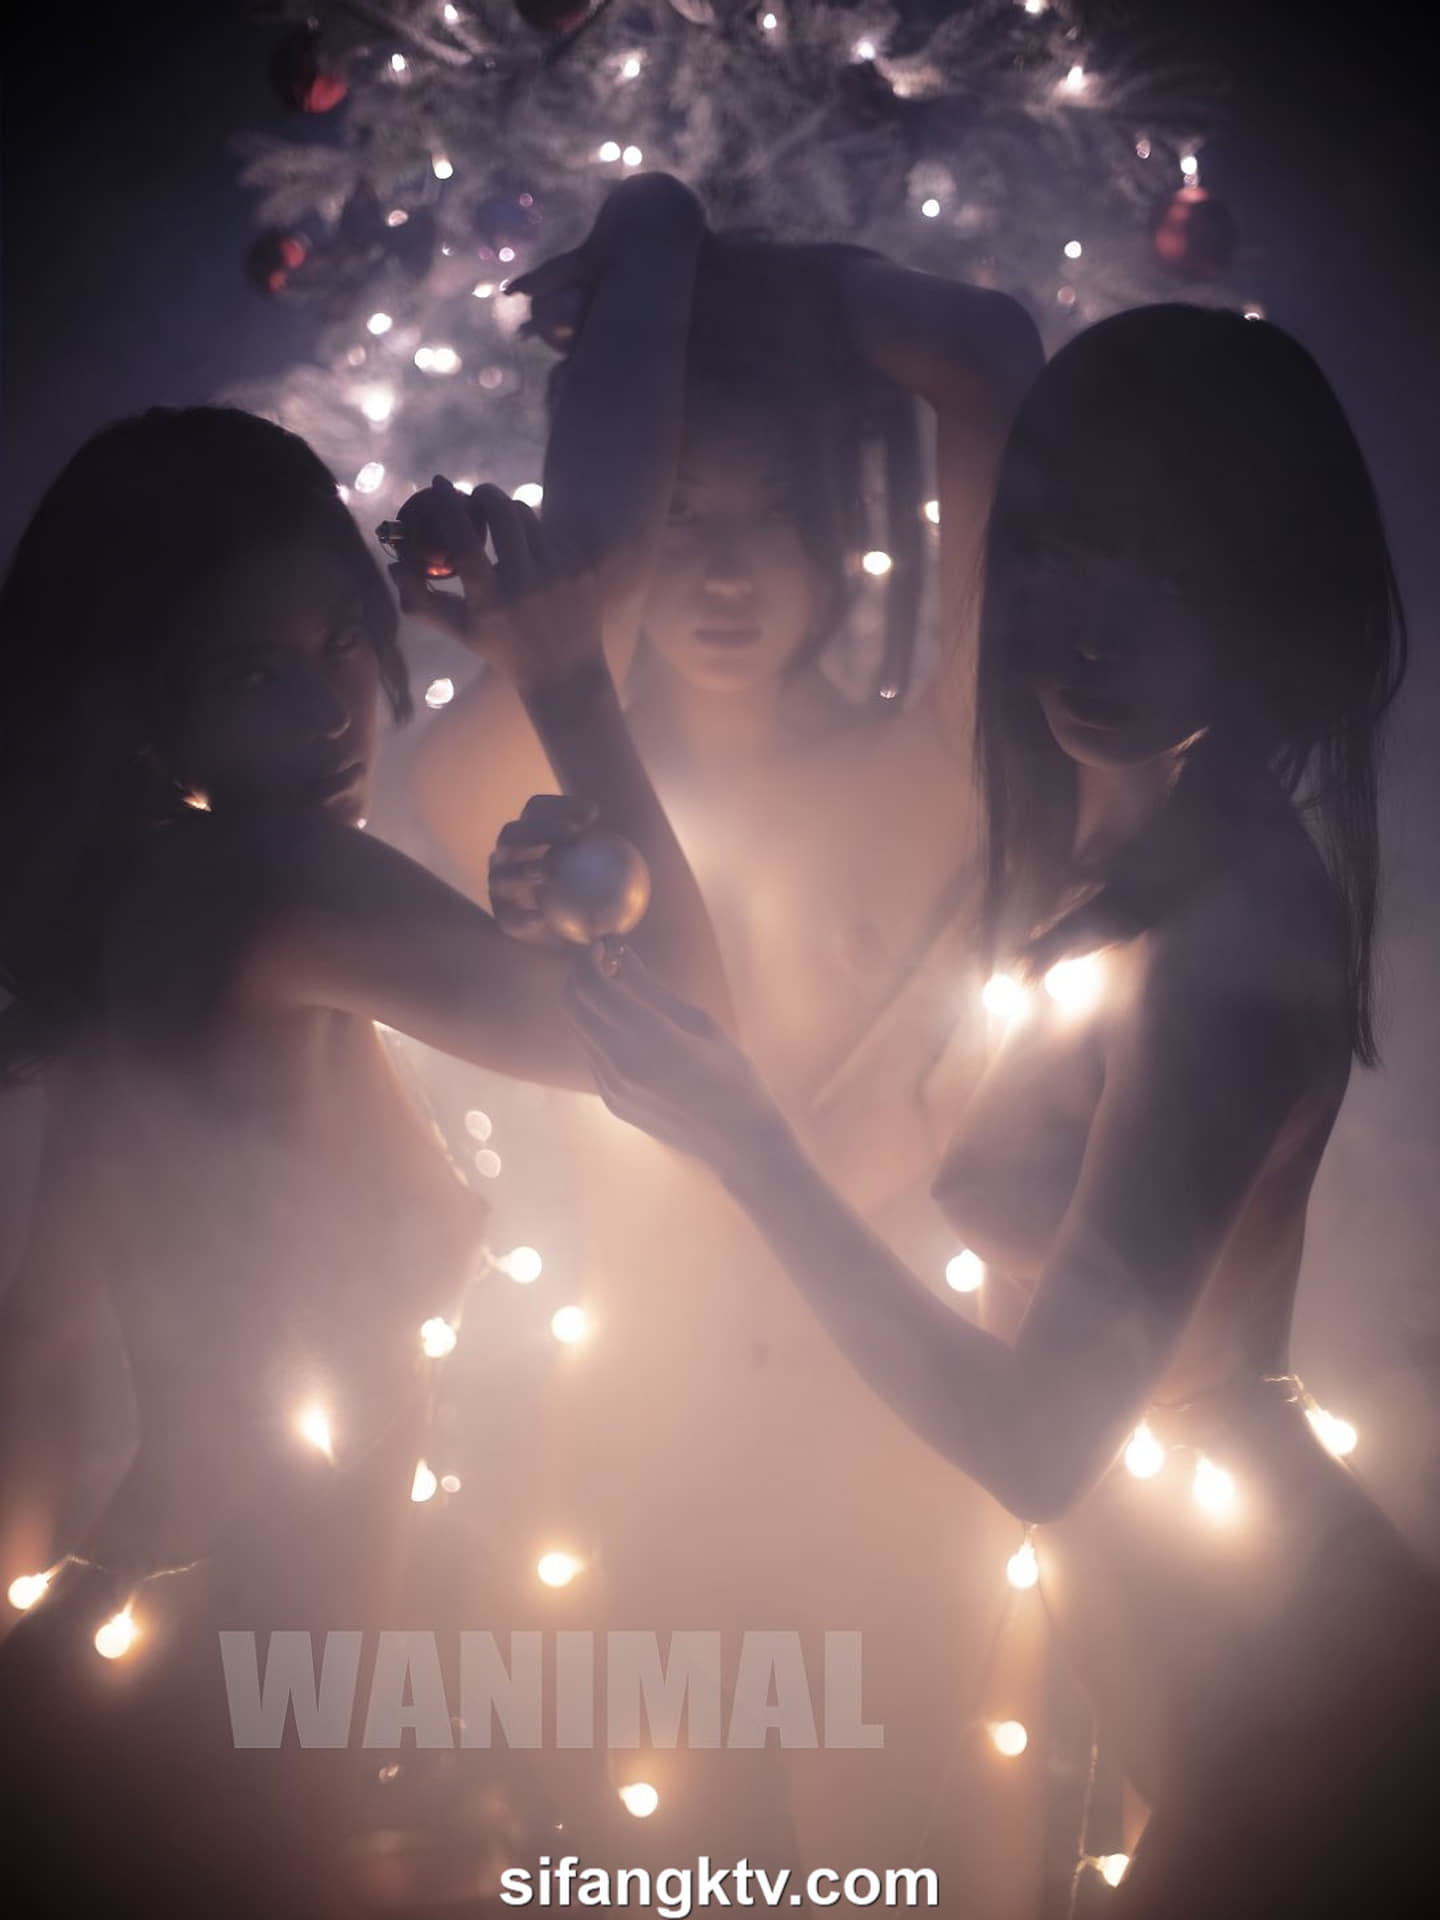 Лучшие интернет-боги фотографии знаменитостей и боги порнографического видео начинают новый год с новостей о красивом сексе - Ван Донг